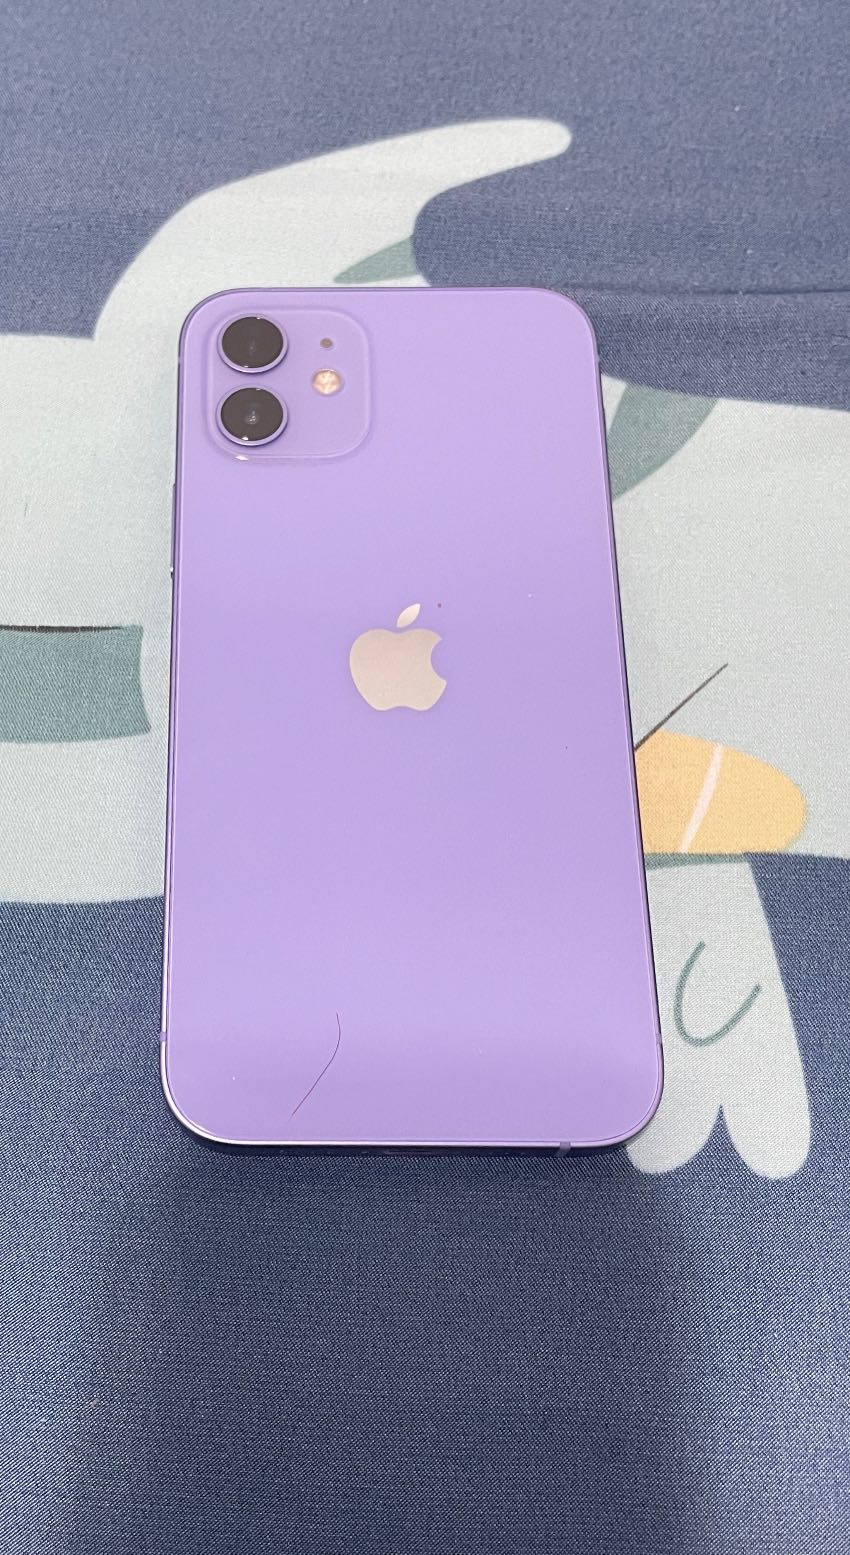 我要賣我要賣Iphone12128G紫色 - 二手交易板 | Dcard